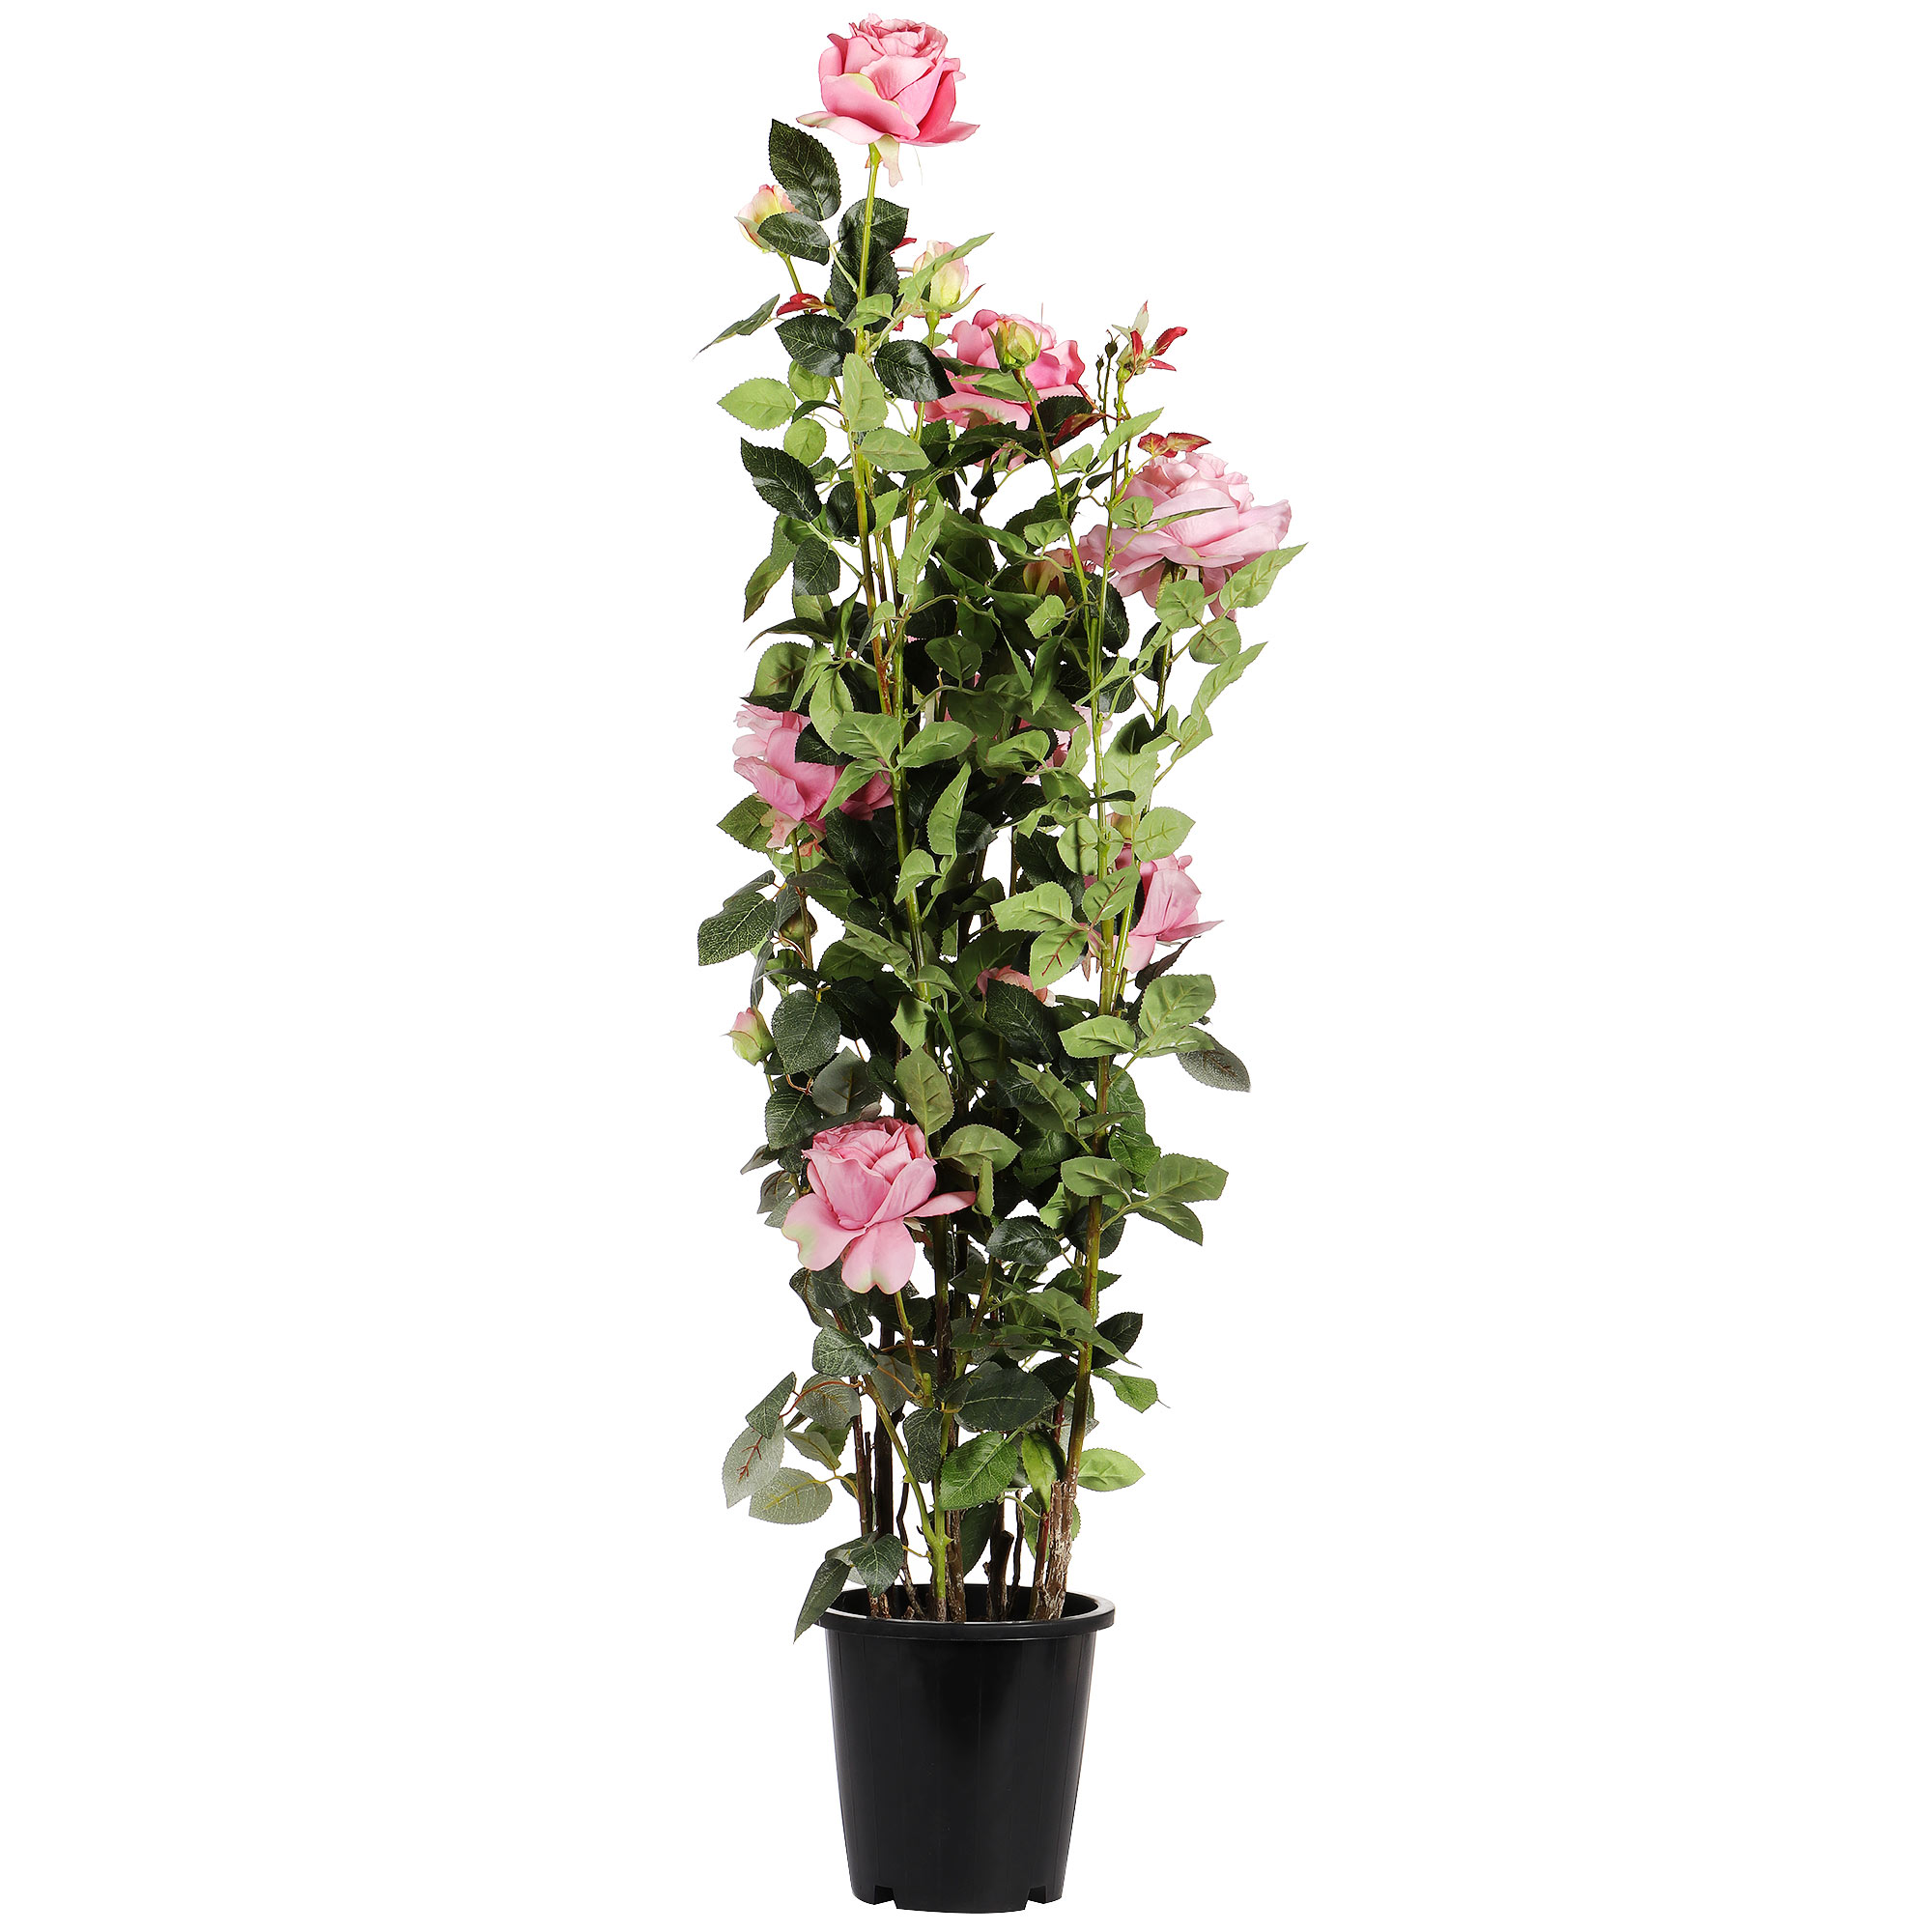 Искусственное растение Tianjin бледно-розовая роза в кашпо 137 см растение искусственное грин бэлт роза h30см кремовый кашпо